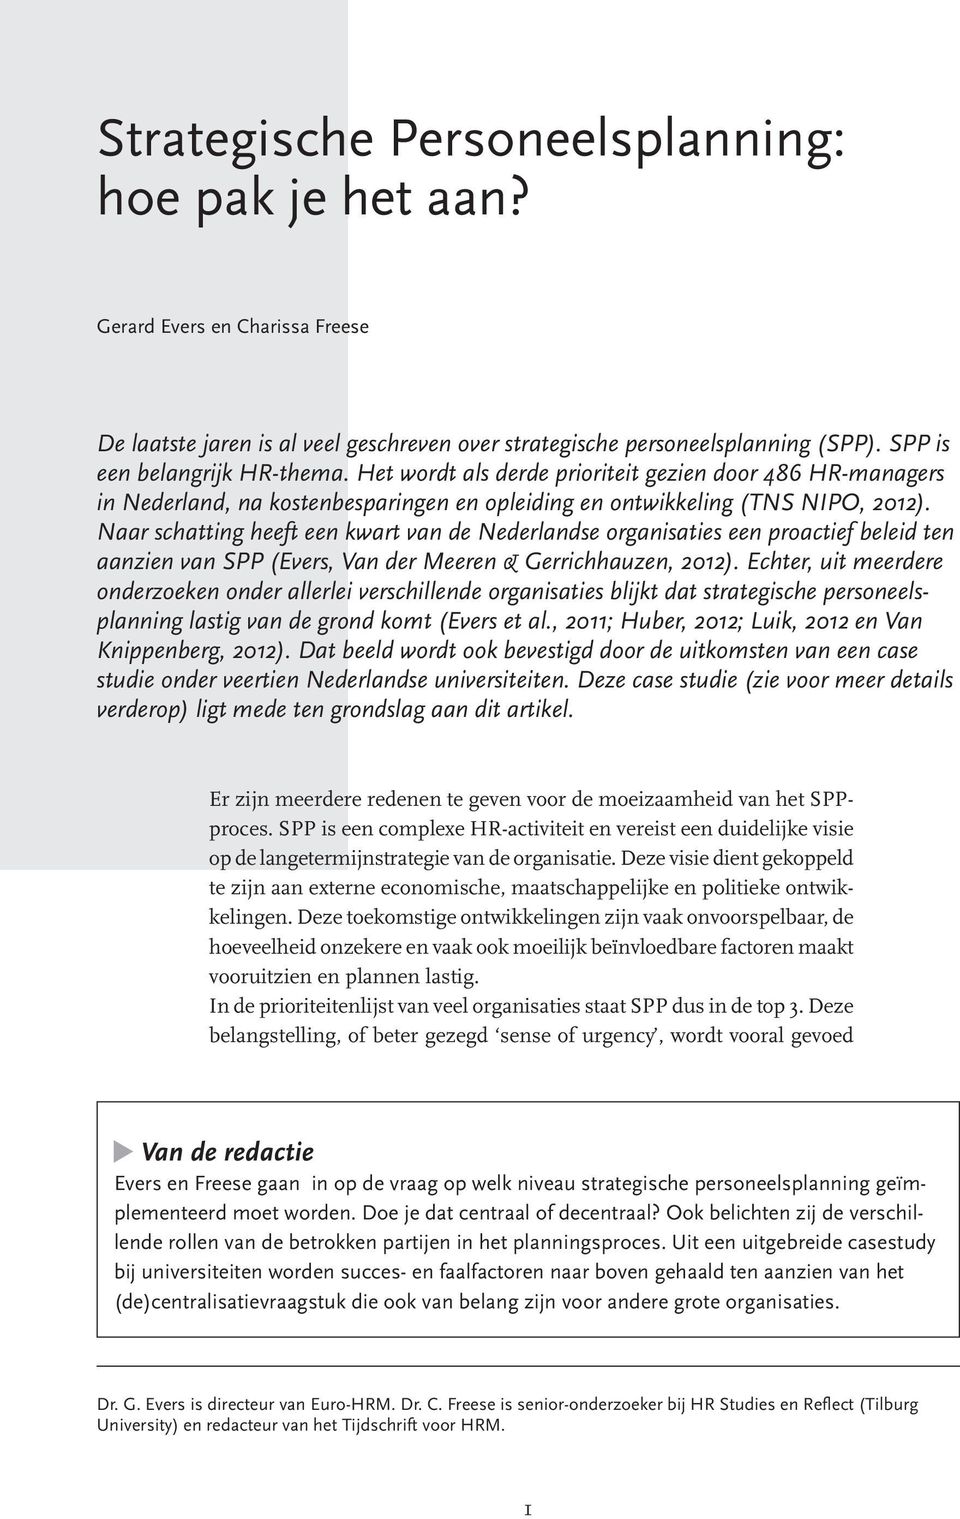 Naar schatting heeft een kwart van de Nederlandse organisaties een proactief beleid ten aanzien van SPP (Evers, Van der Meeren & Gerrichhauzen, 2012).